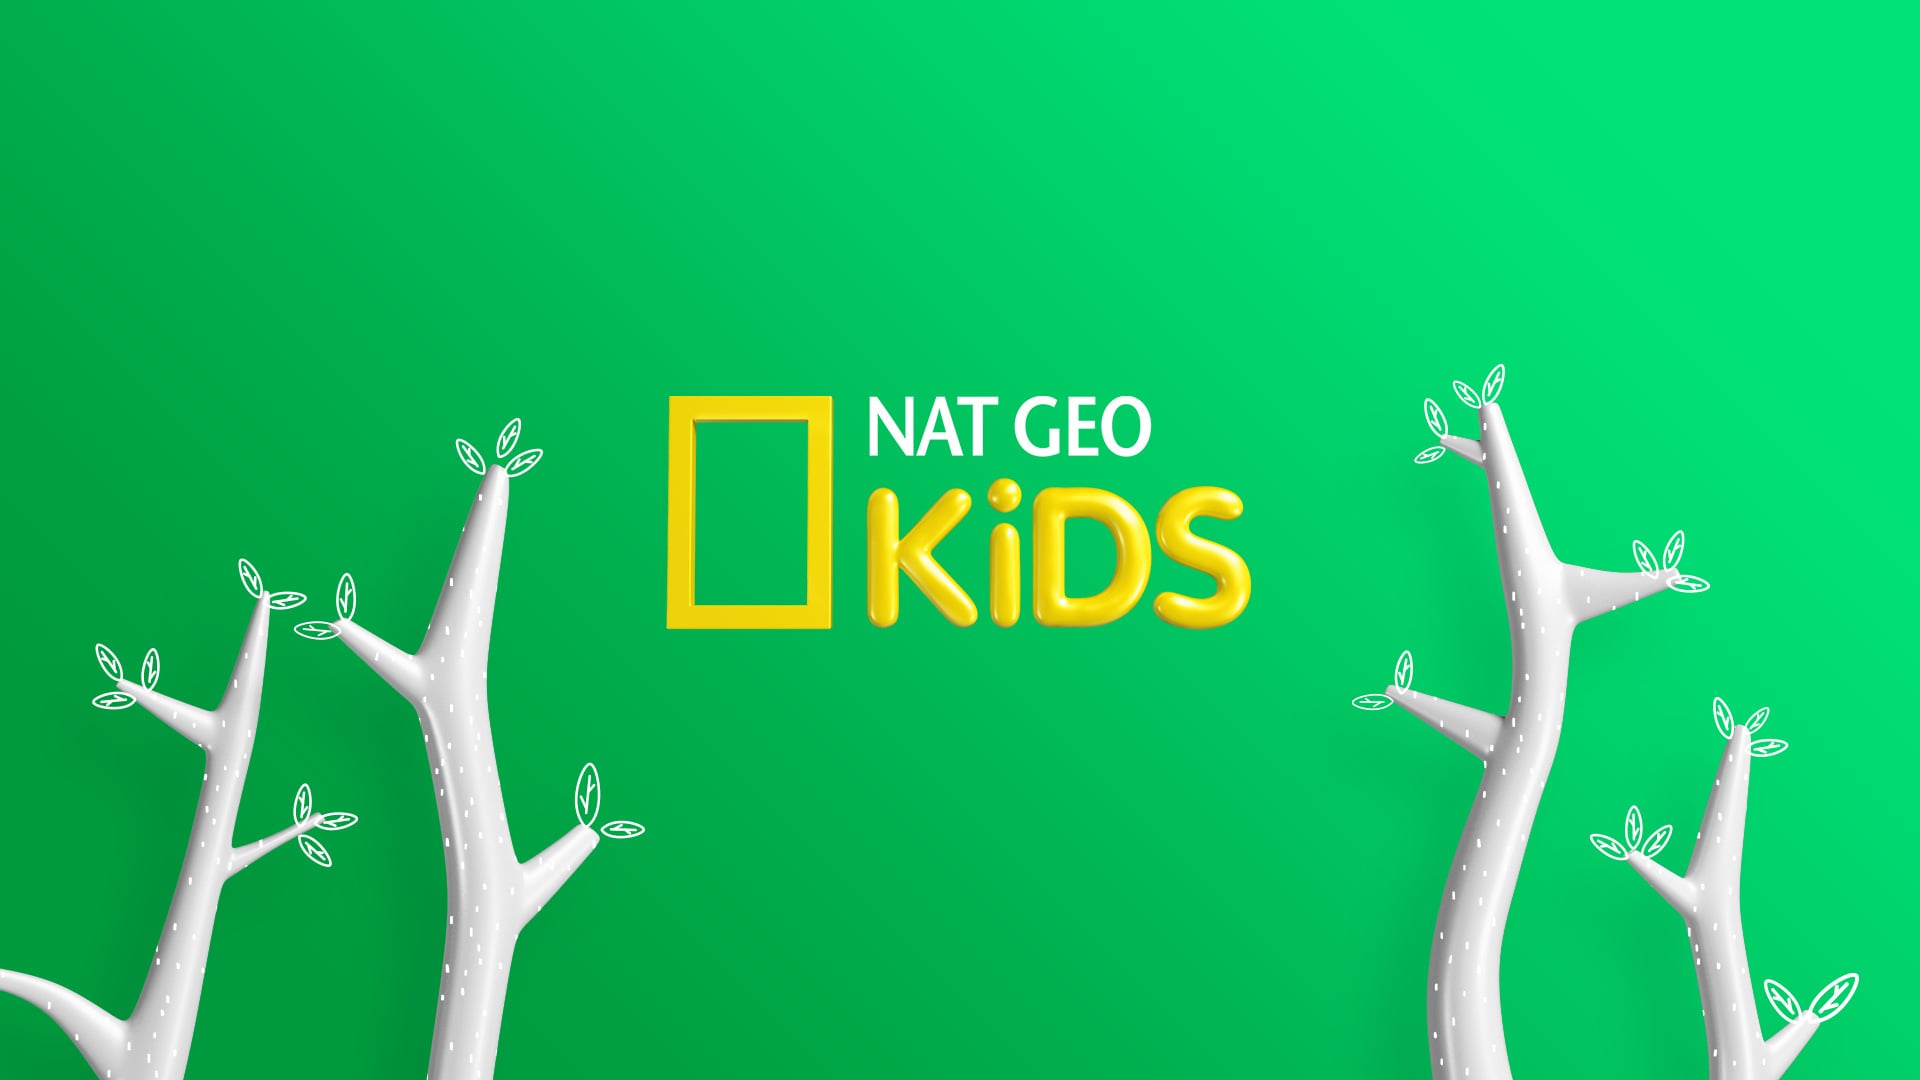 Nat Geo Kids Branding on Vimeo